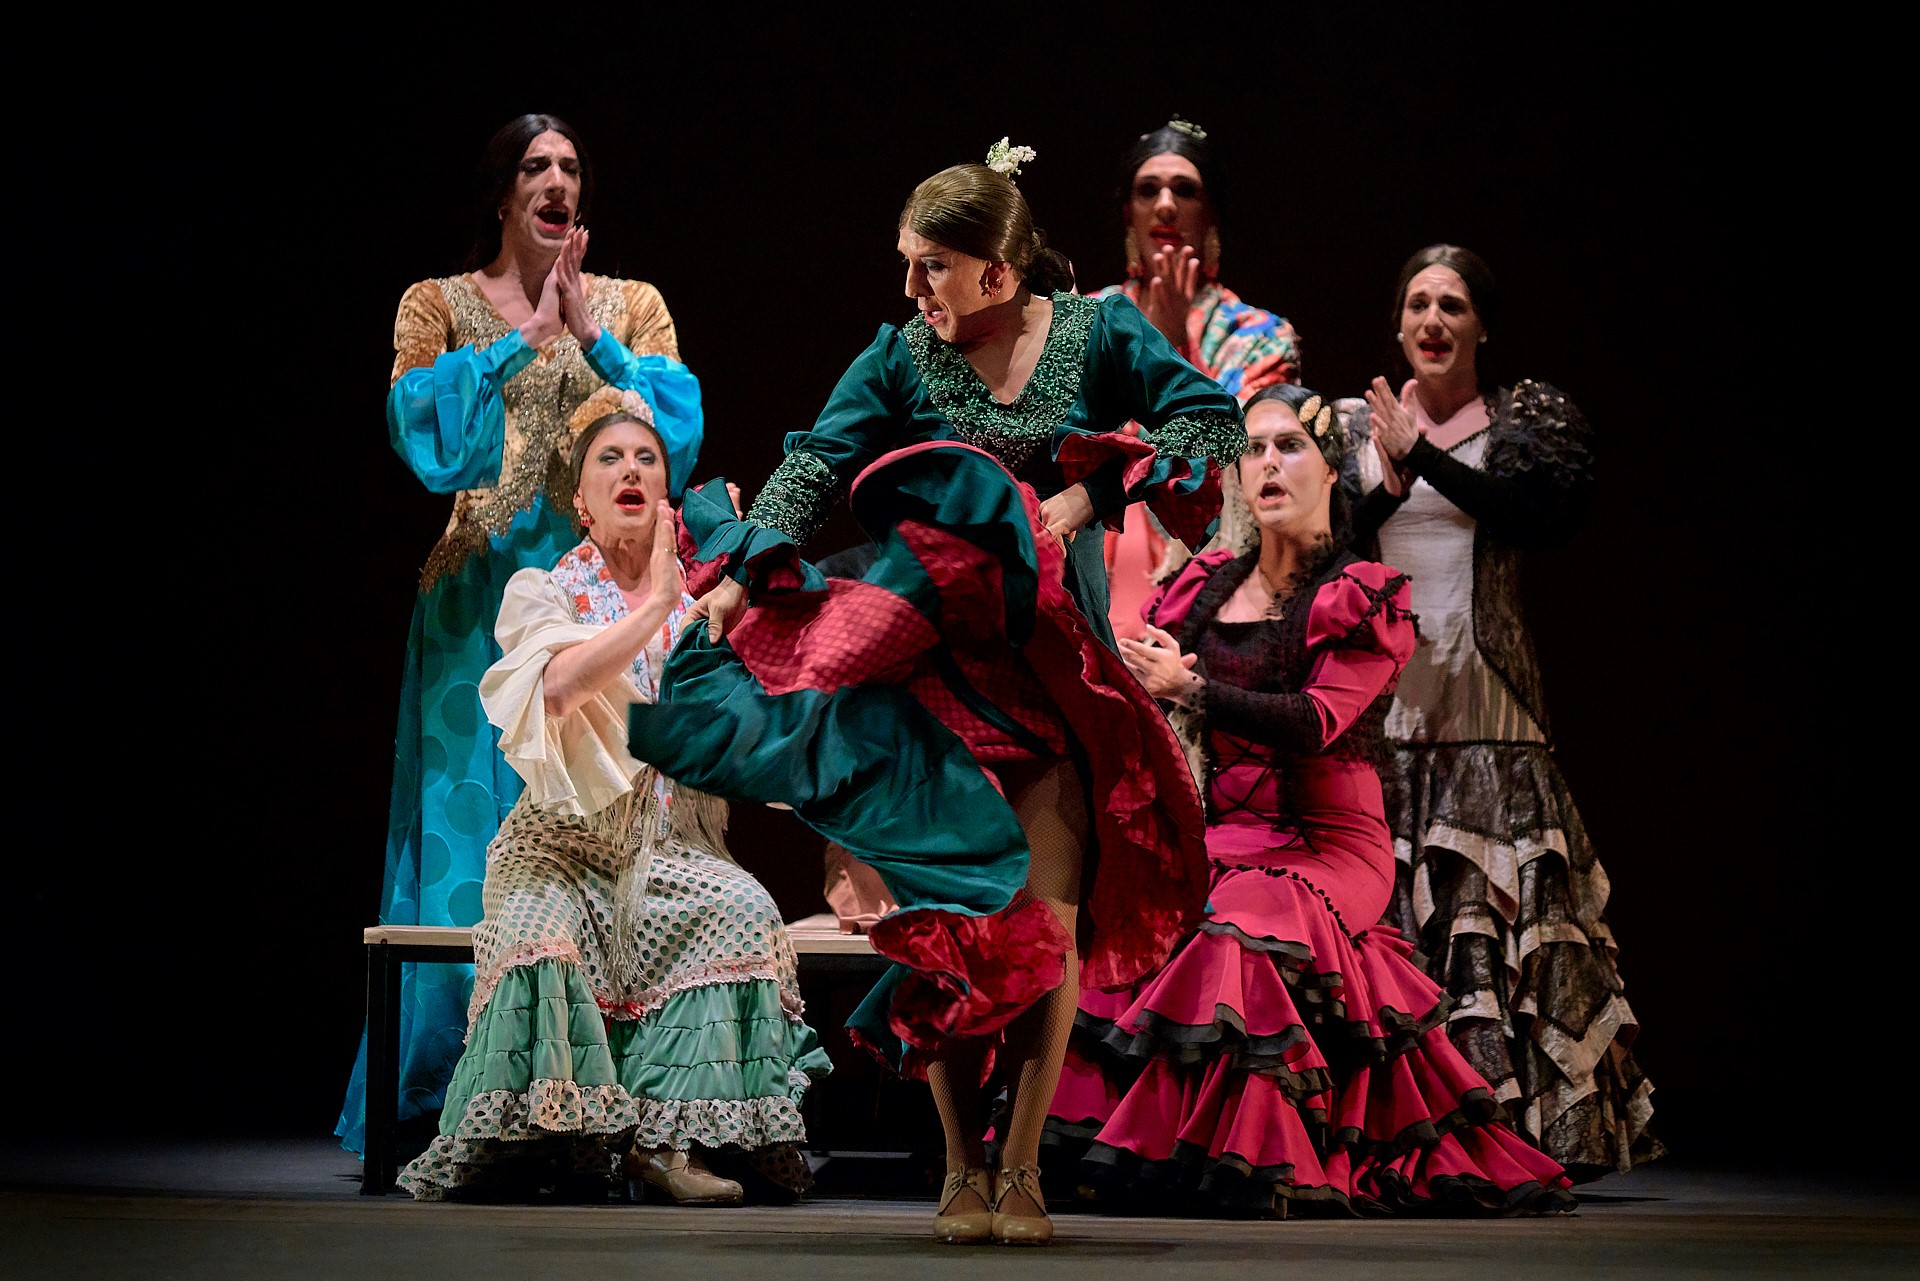 Foto van de zeven dansers van VIVA, gehuld in de traditionele bata de cola (lange sleeprok), mantón (omslagdoek), peineta (kam) spelen zij met gender.